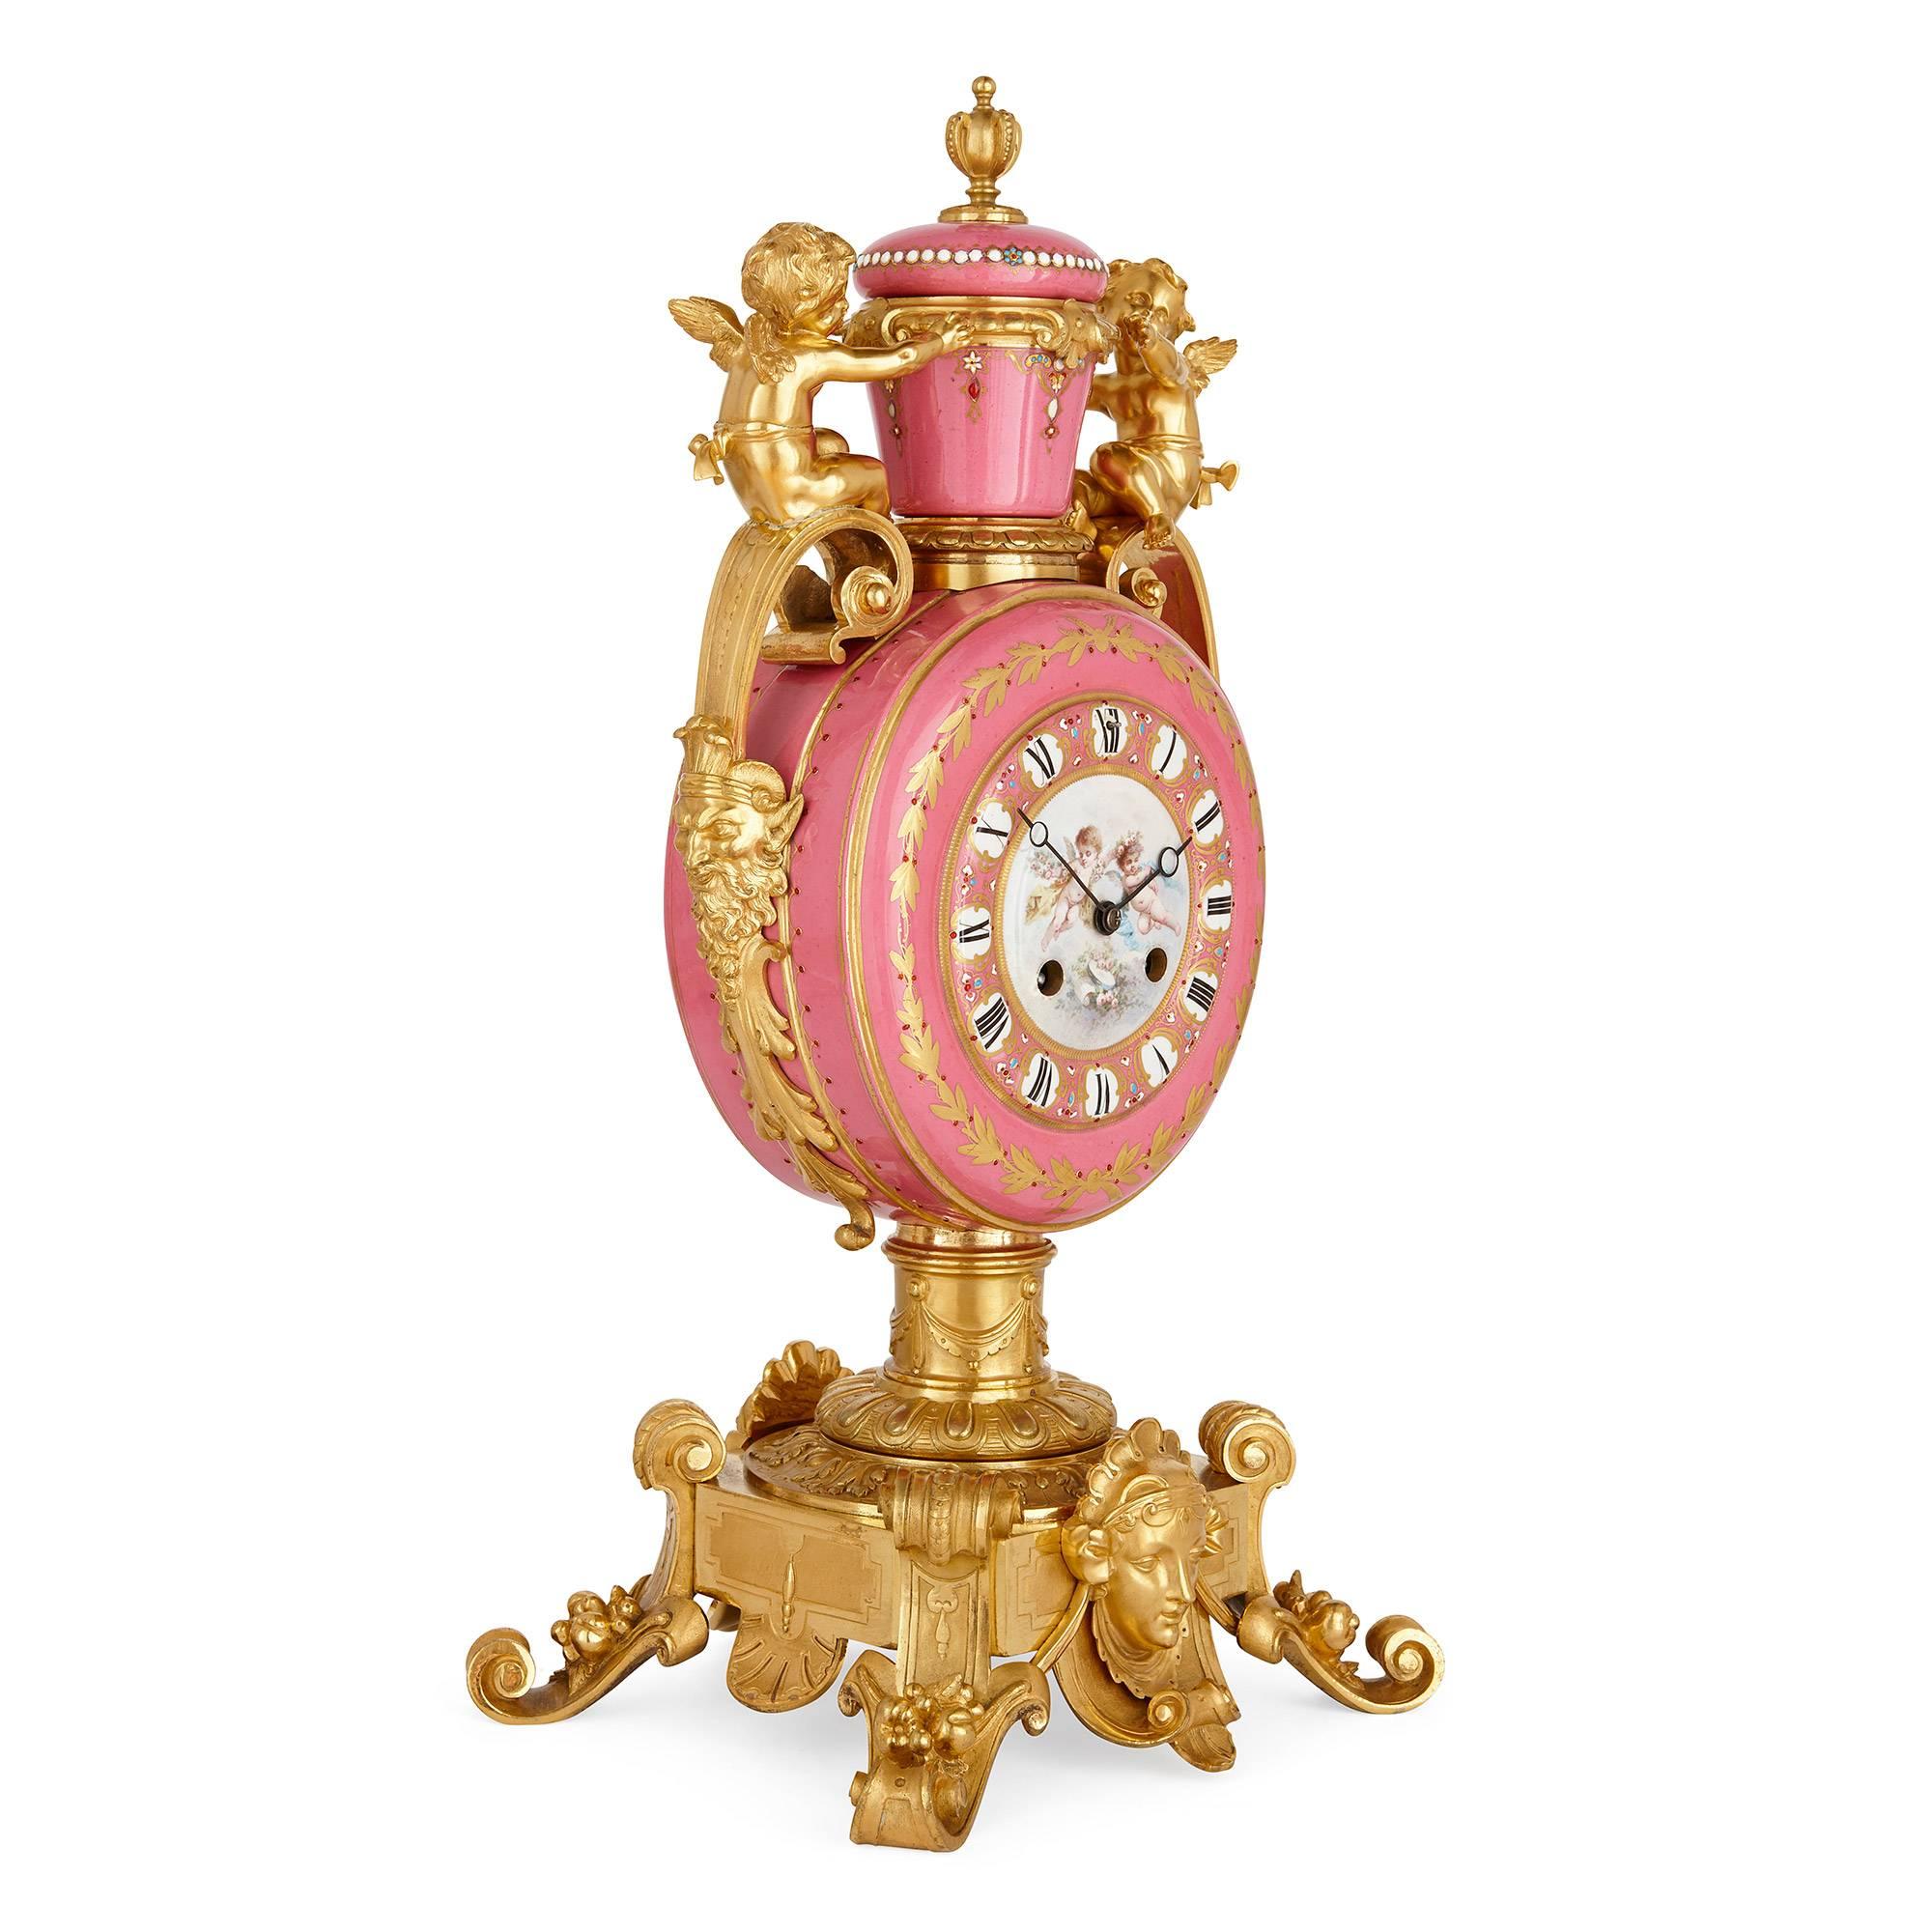 Ce magnifique ensemble d'horloges de style néoclassique compléterait à merveille tout intérieur élégant. 

L'ensemble d'horloges françaises anciennes composé d'une horloge centrale et d'une paire de vases, tous décorés en porcelaine rose de style